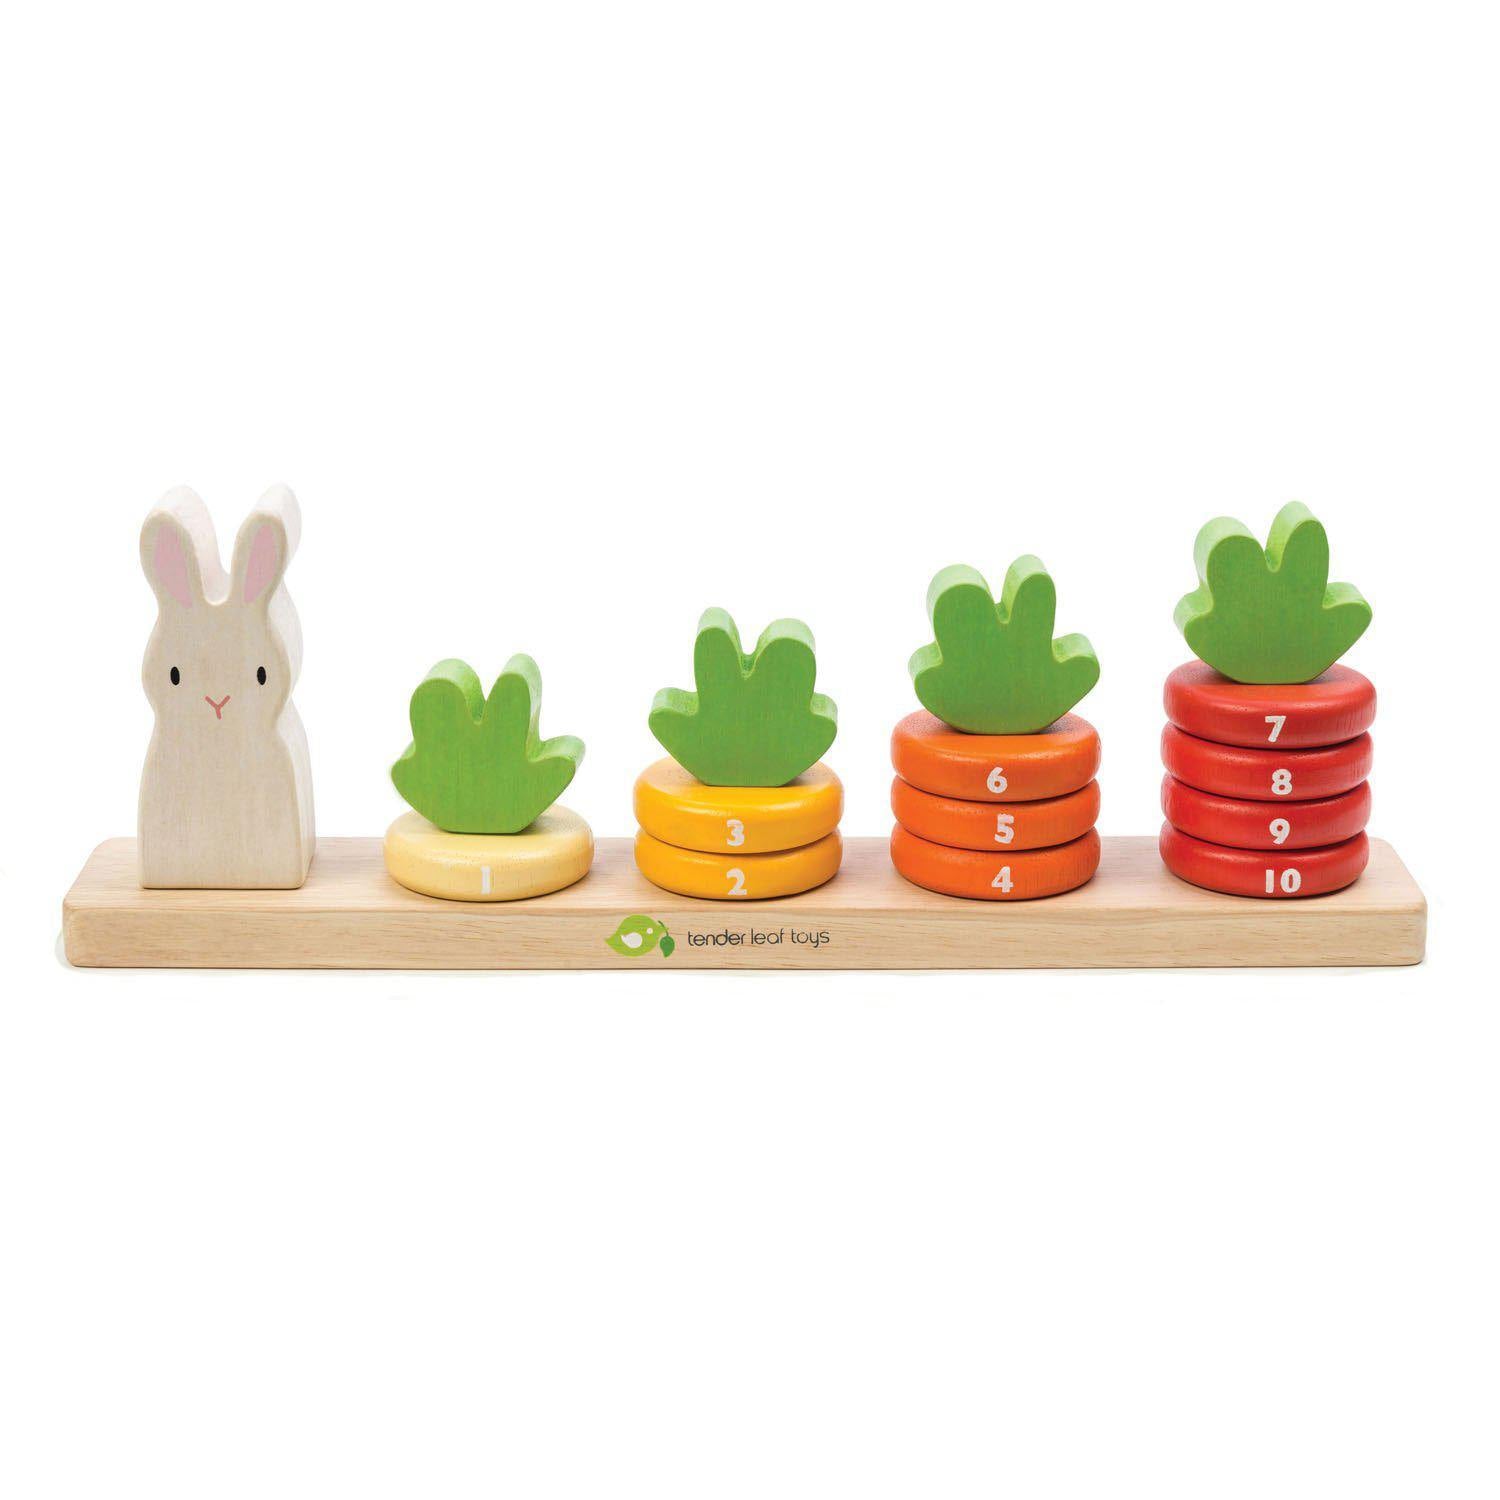 Murokszámoló, prémium minőségű fából - Counting Carrots - 16 darab - Tender Leaf Toys-Tender Leaf Toys-2-Játszma.ro - A maradandó élmények boltja